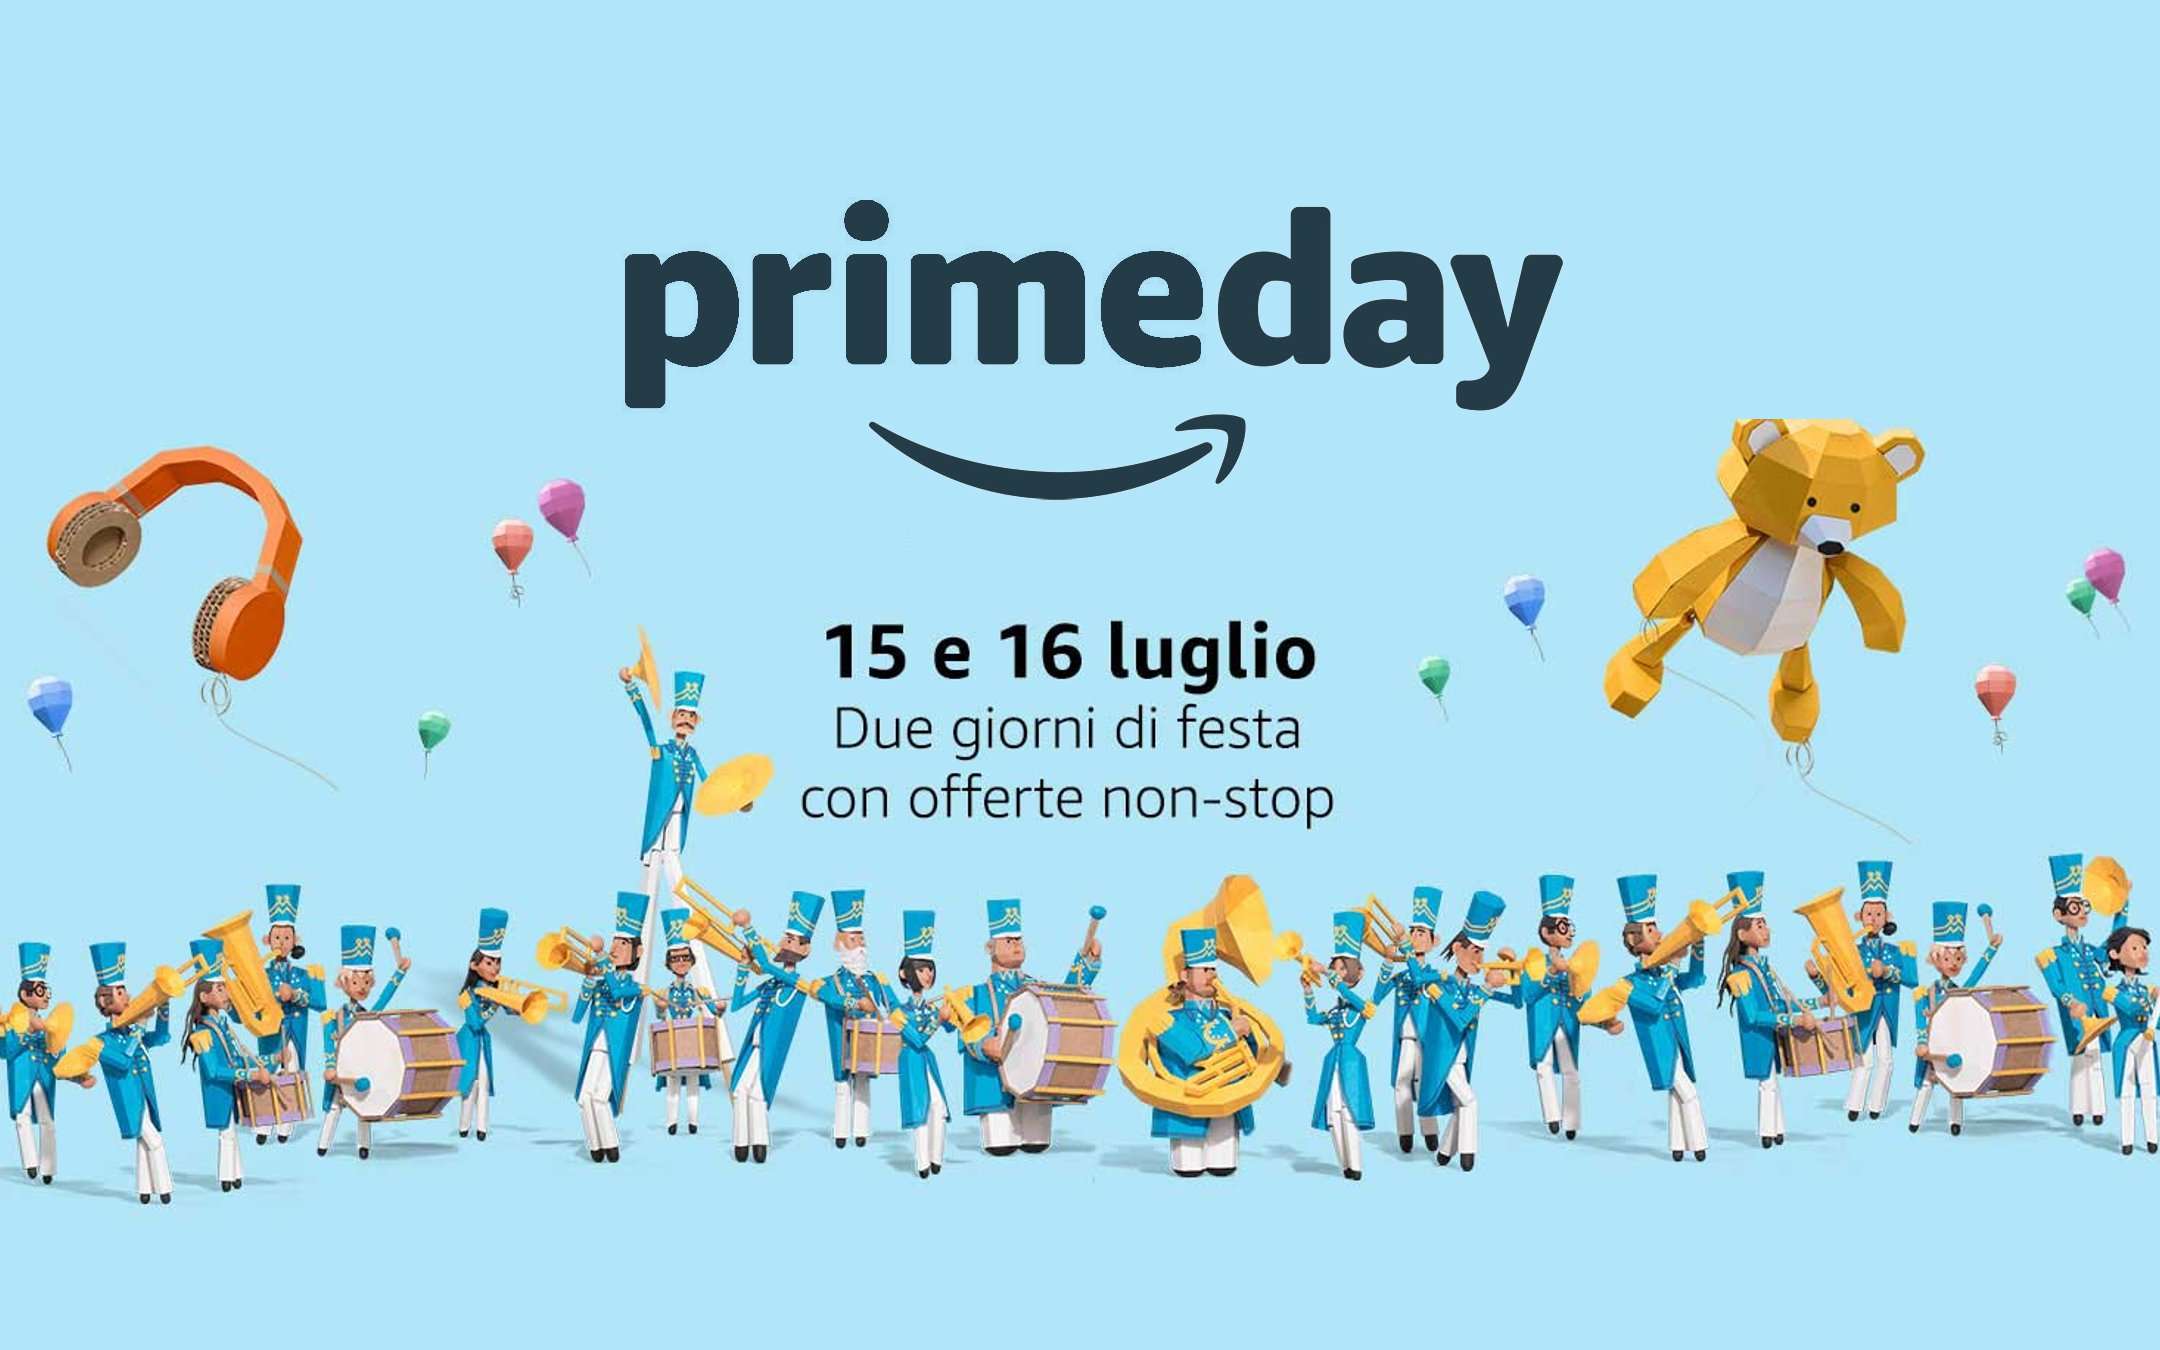 Amazon Prime Day 2019: due giorni di sconti